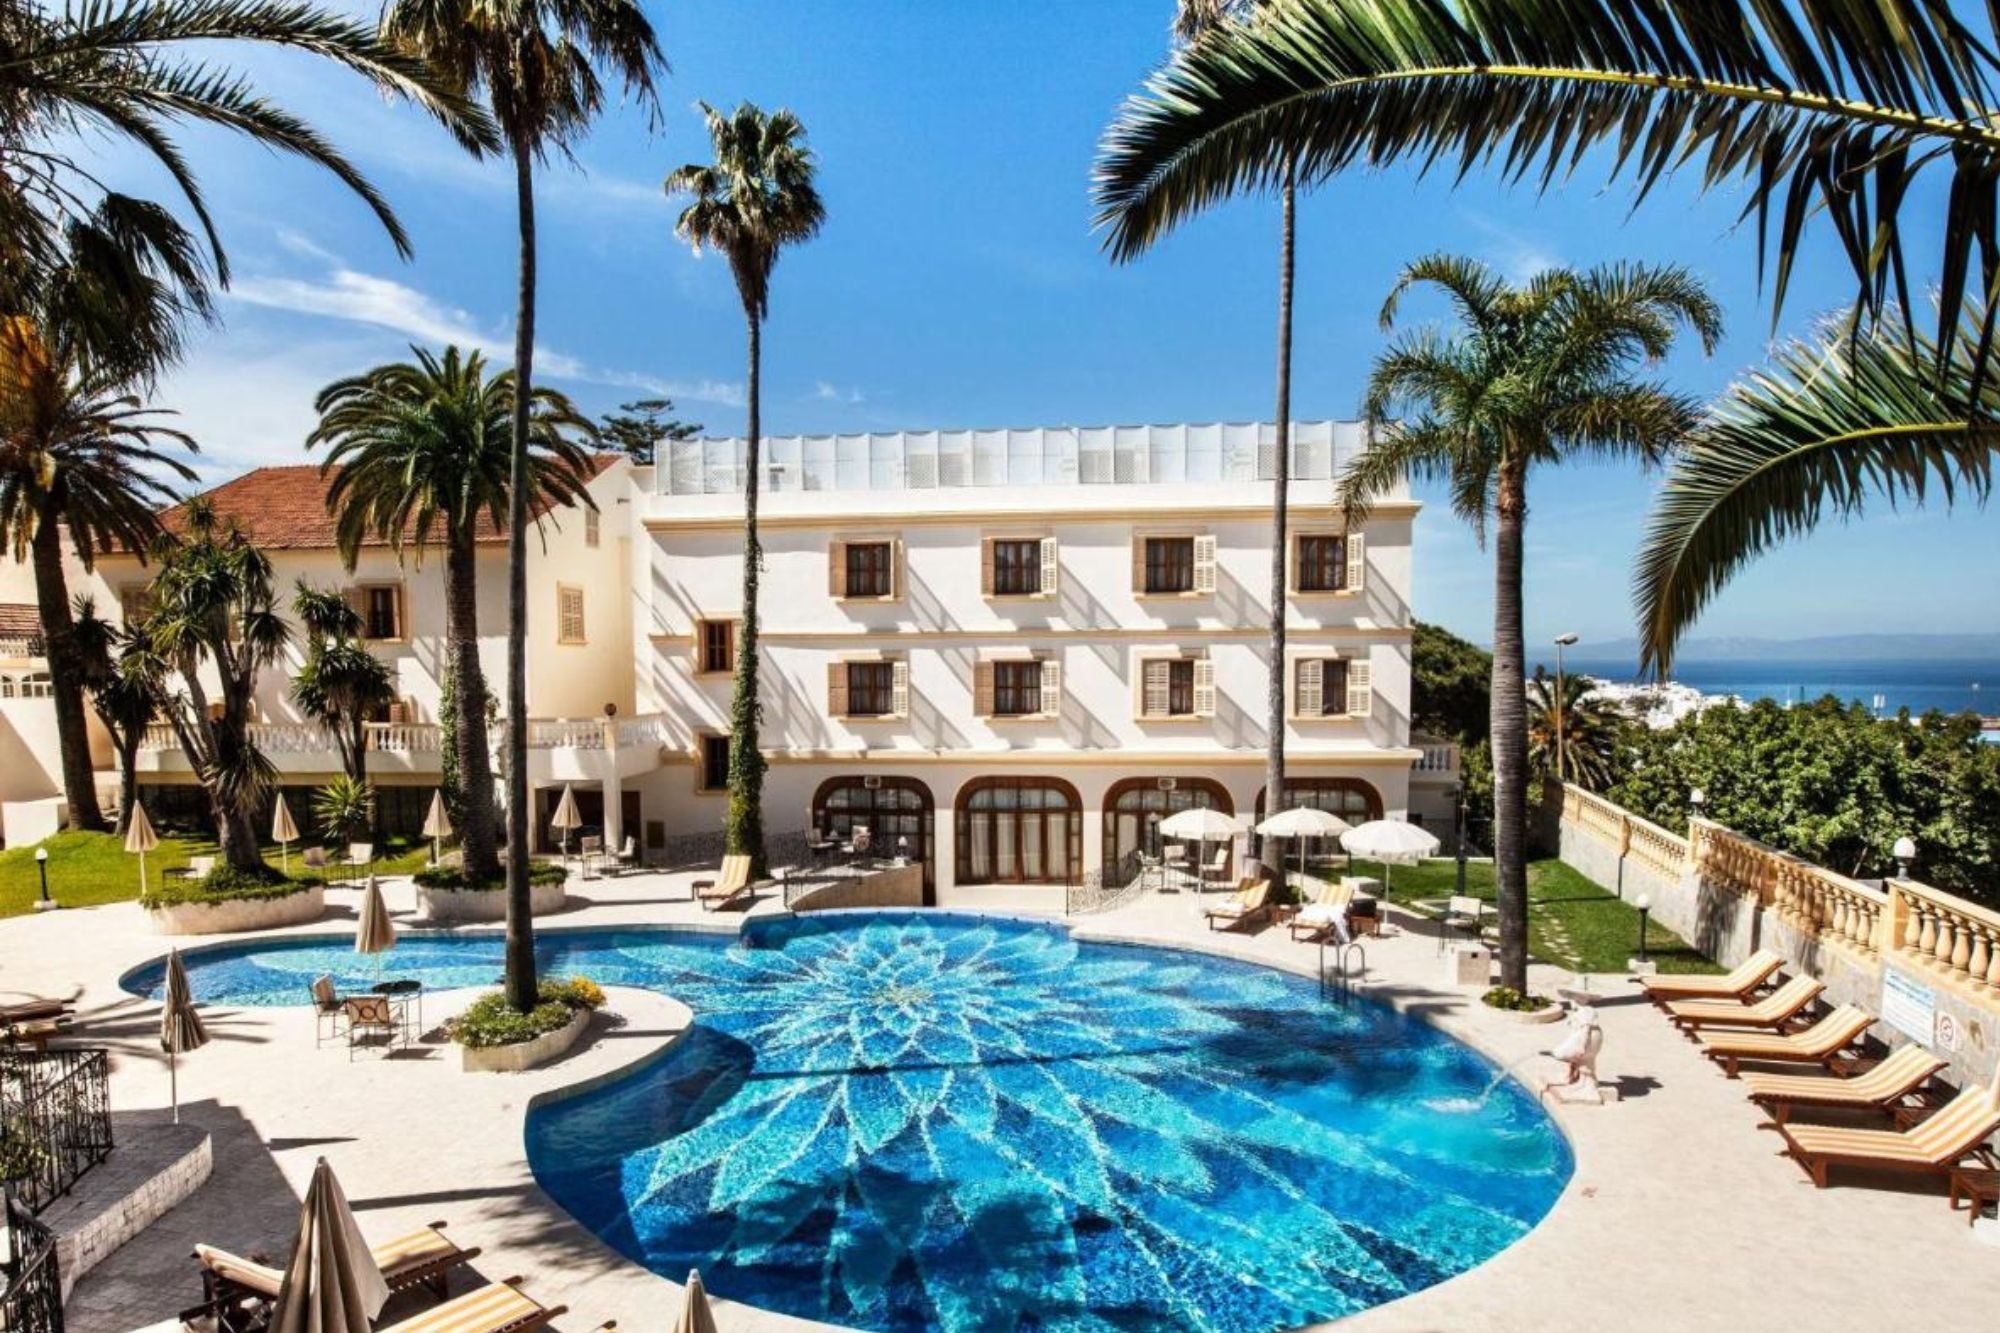 Grand Hotel Villa de France _ Hotel de luxe de Tanger (1)